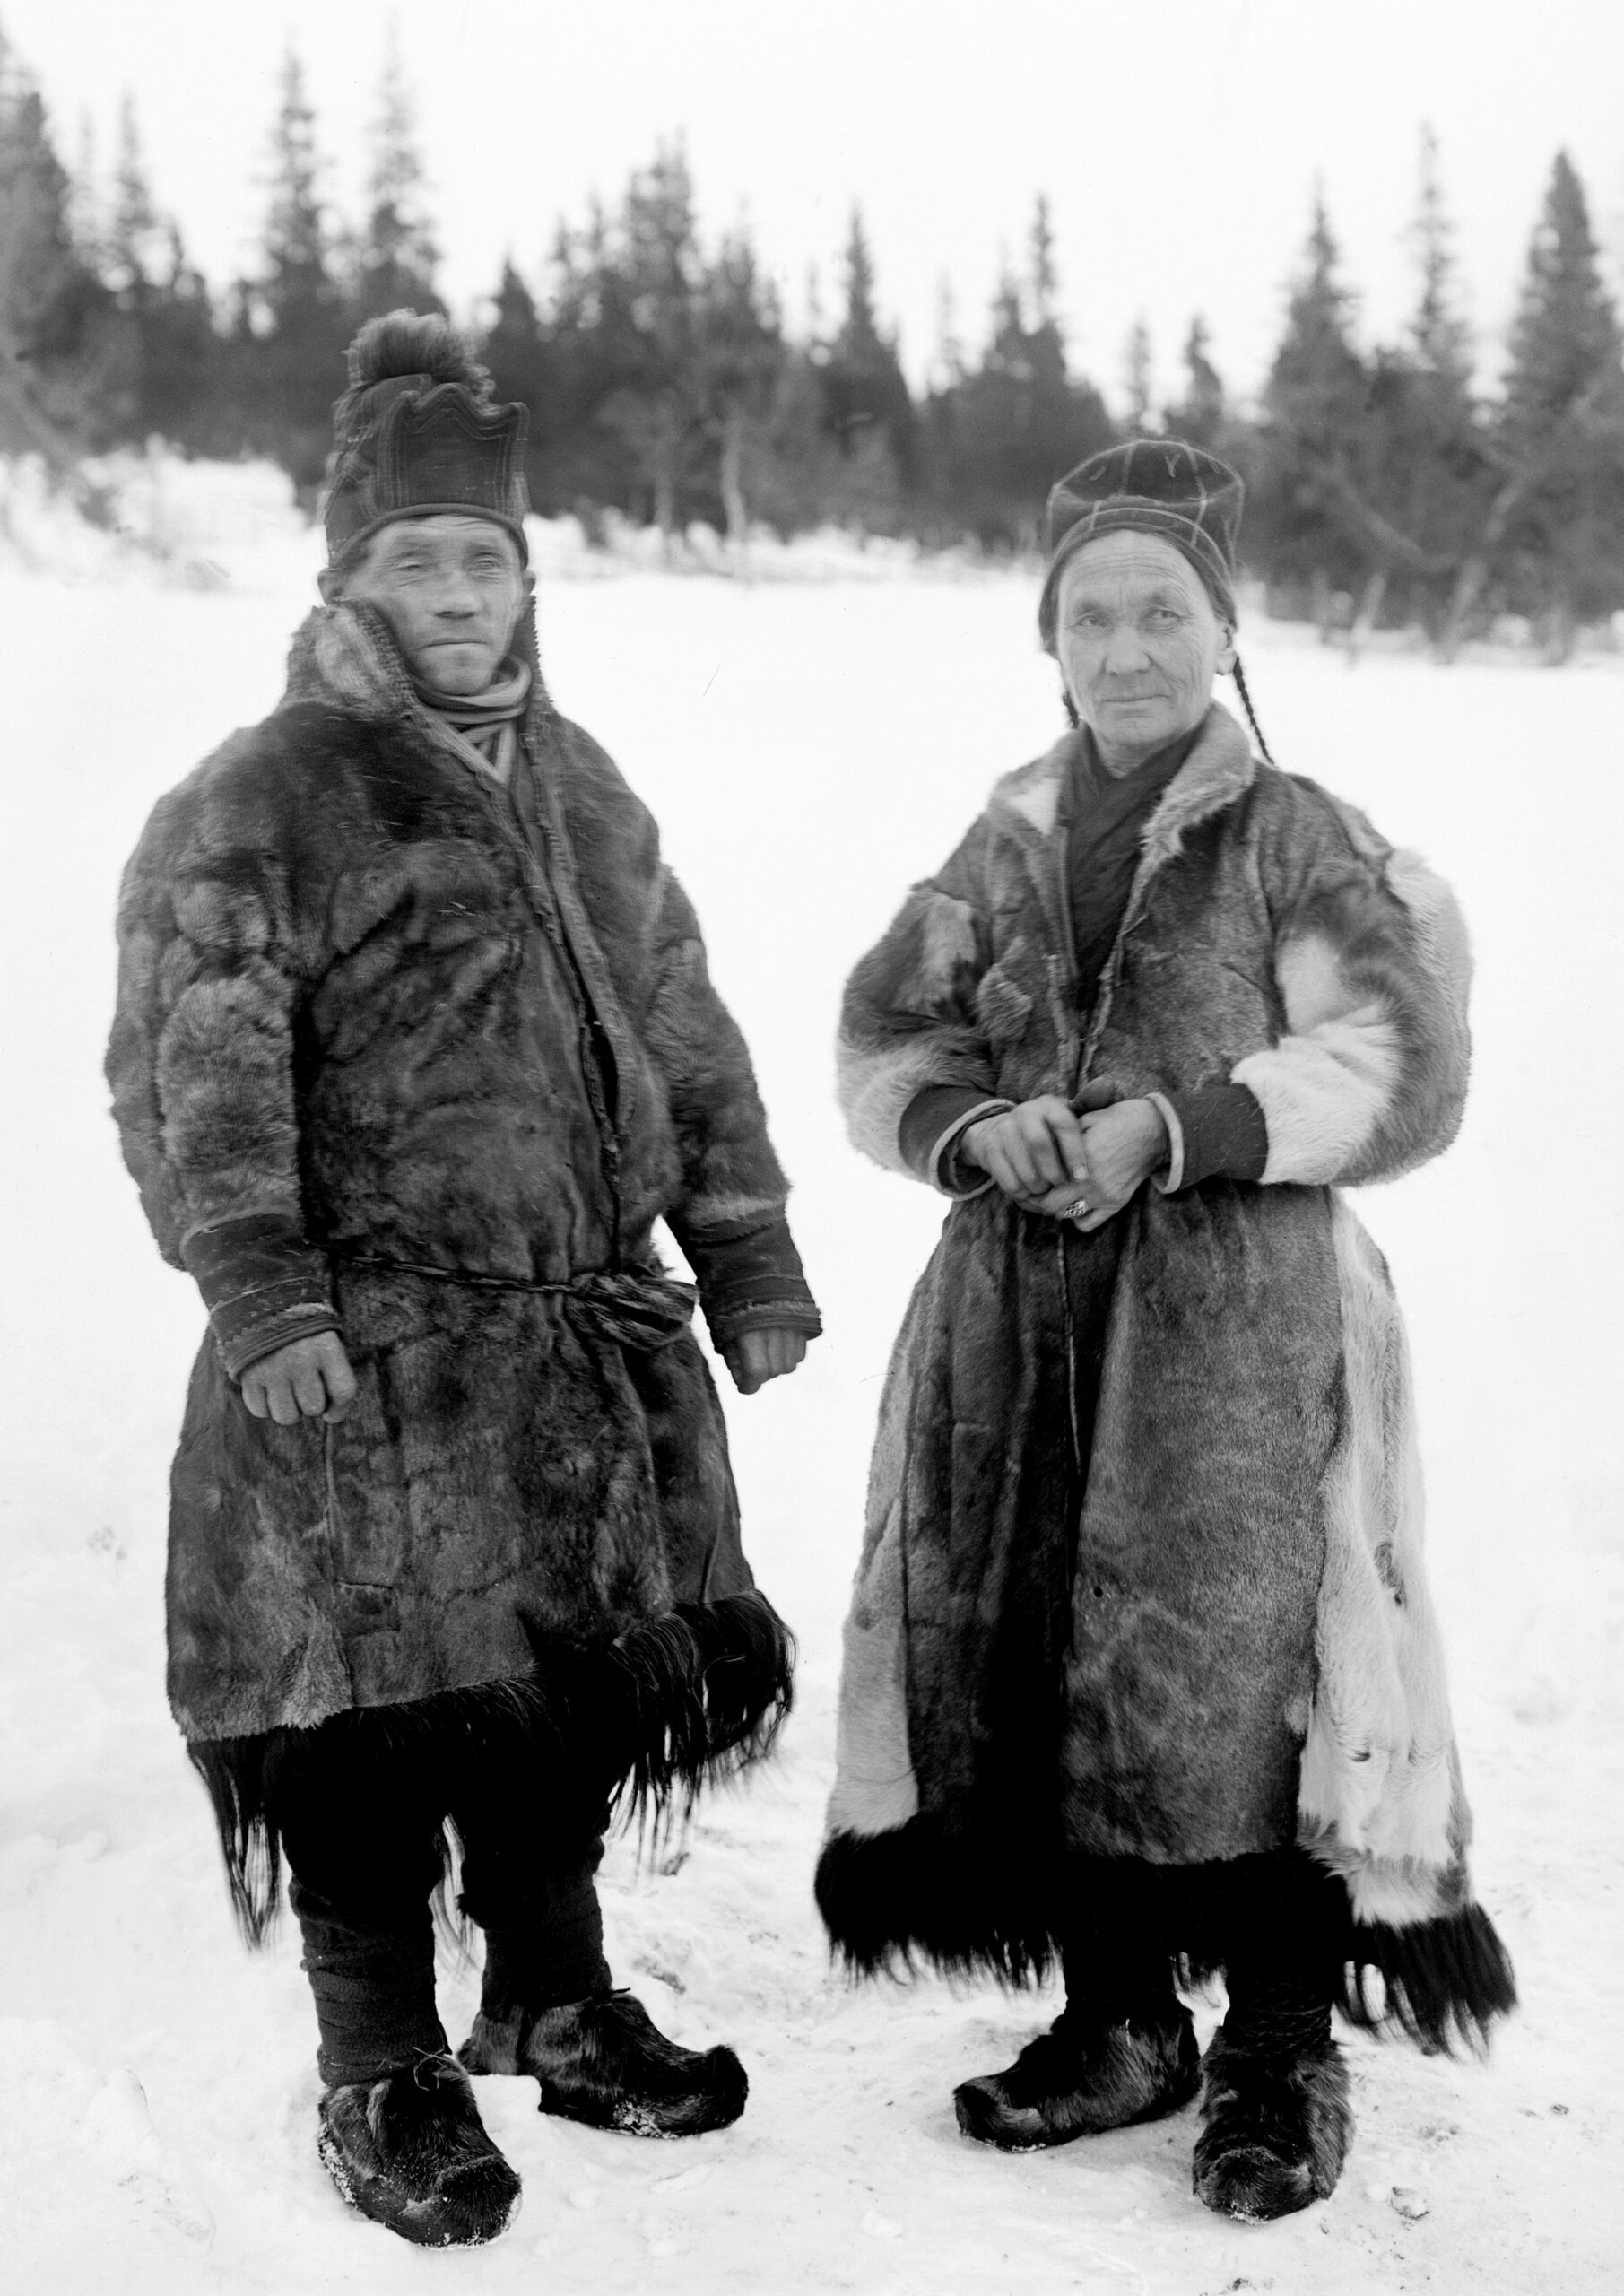 Äldre svartvit bild av Märta Olofsdotter och Nils Nilsson, ett samiskt par i sina renskinnspälsar.